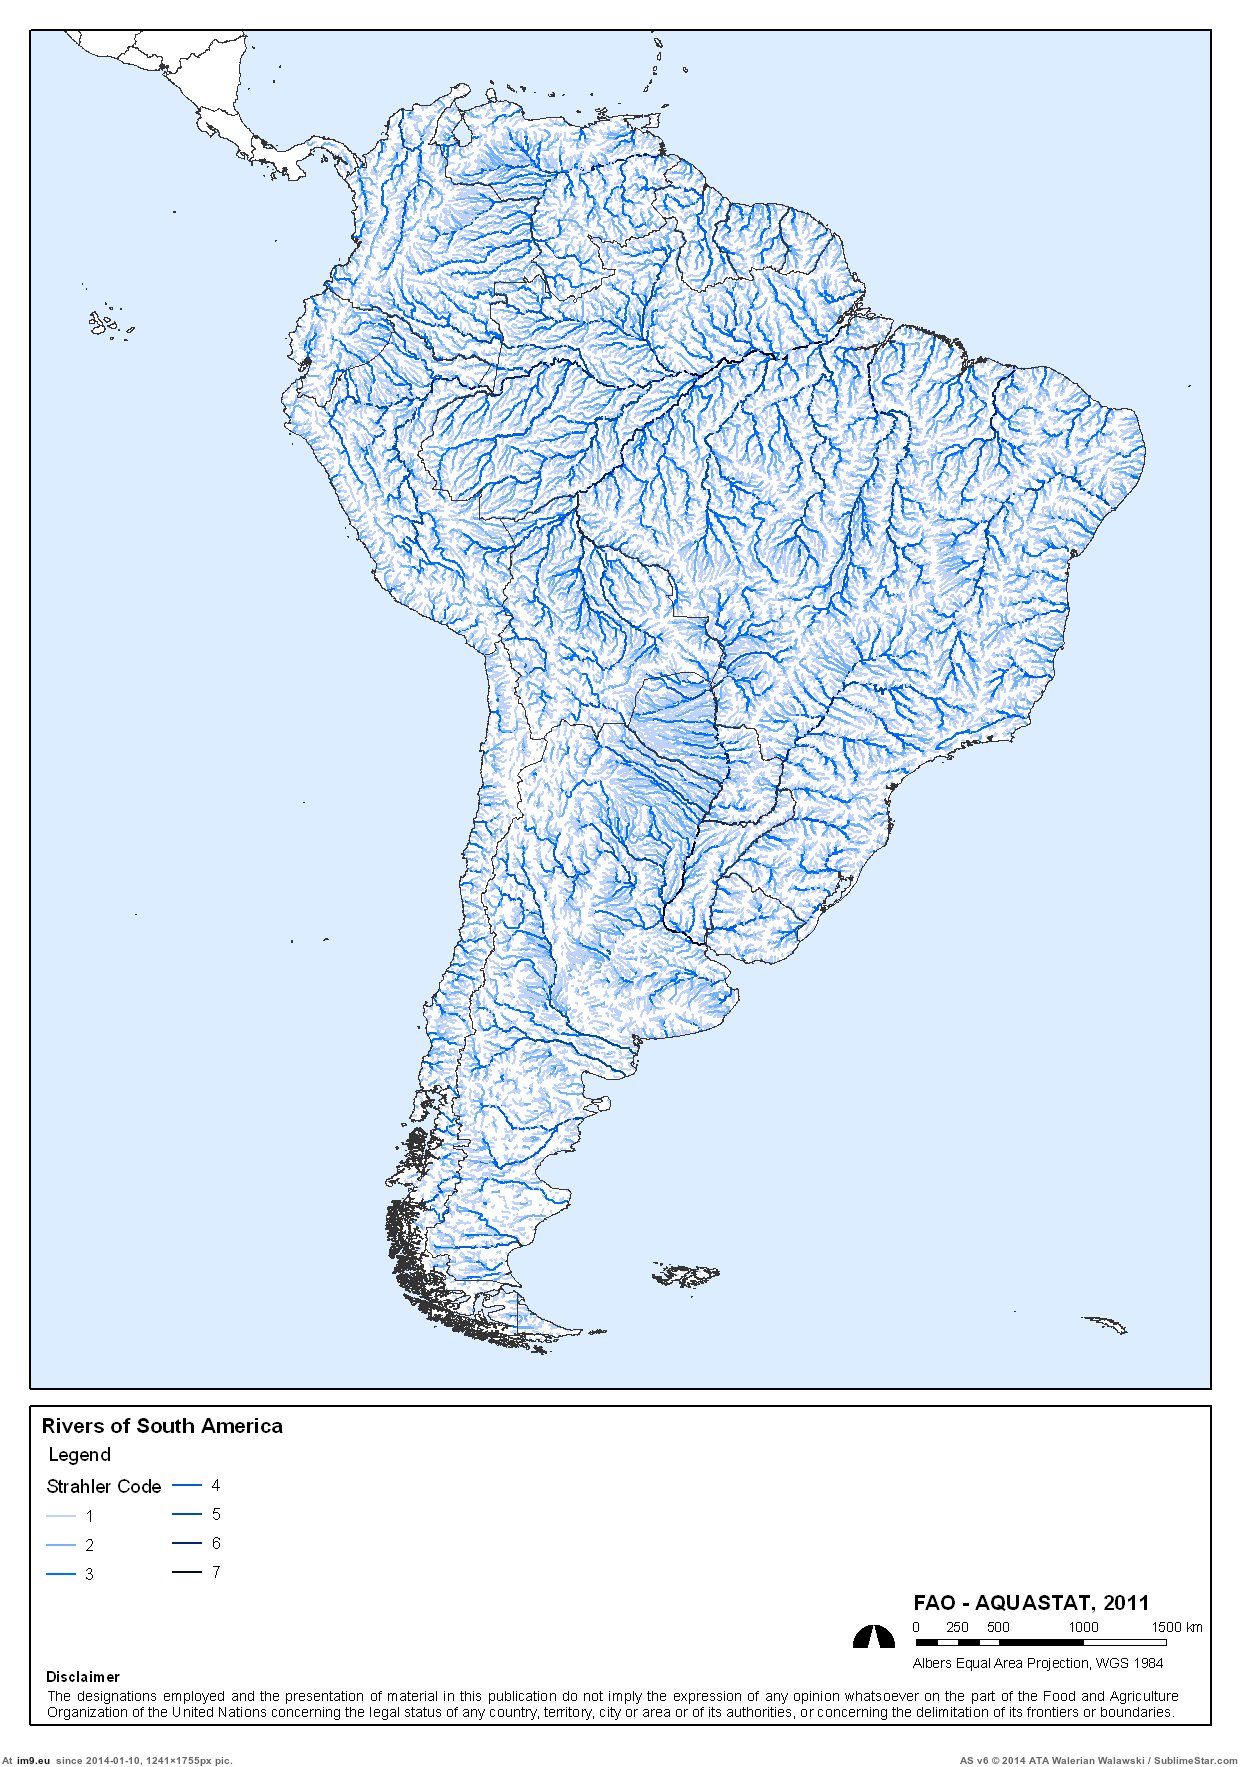 Крупнейшие реки южной америки на контурной карте. Реки и озера Южной Америки на карте. Крупные реки Южной Америки на карте. Крупные реки Латинской Америки на карте. Крупнейшие реки и озера Южной Америки на карте.